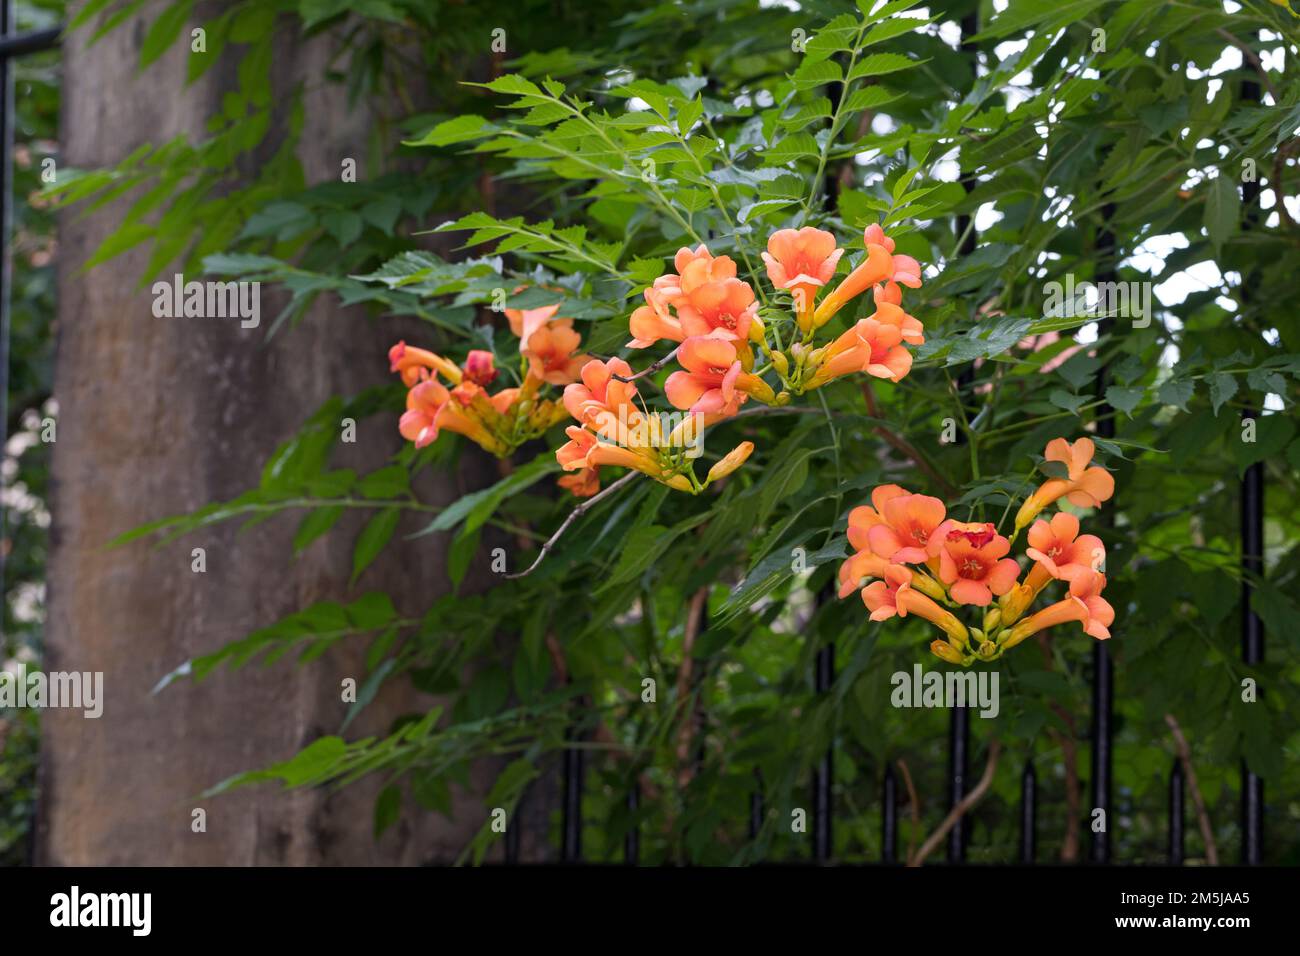 Klettertrompete, wächst an einem Zaun im Siedlungsbereich, Kletter-Trompete, Trompetenblume, Trompeten-Blume, Trompetenwinde, Trompetenwein, Trompeten Foto Stock